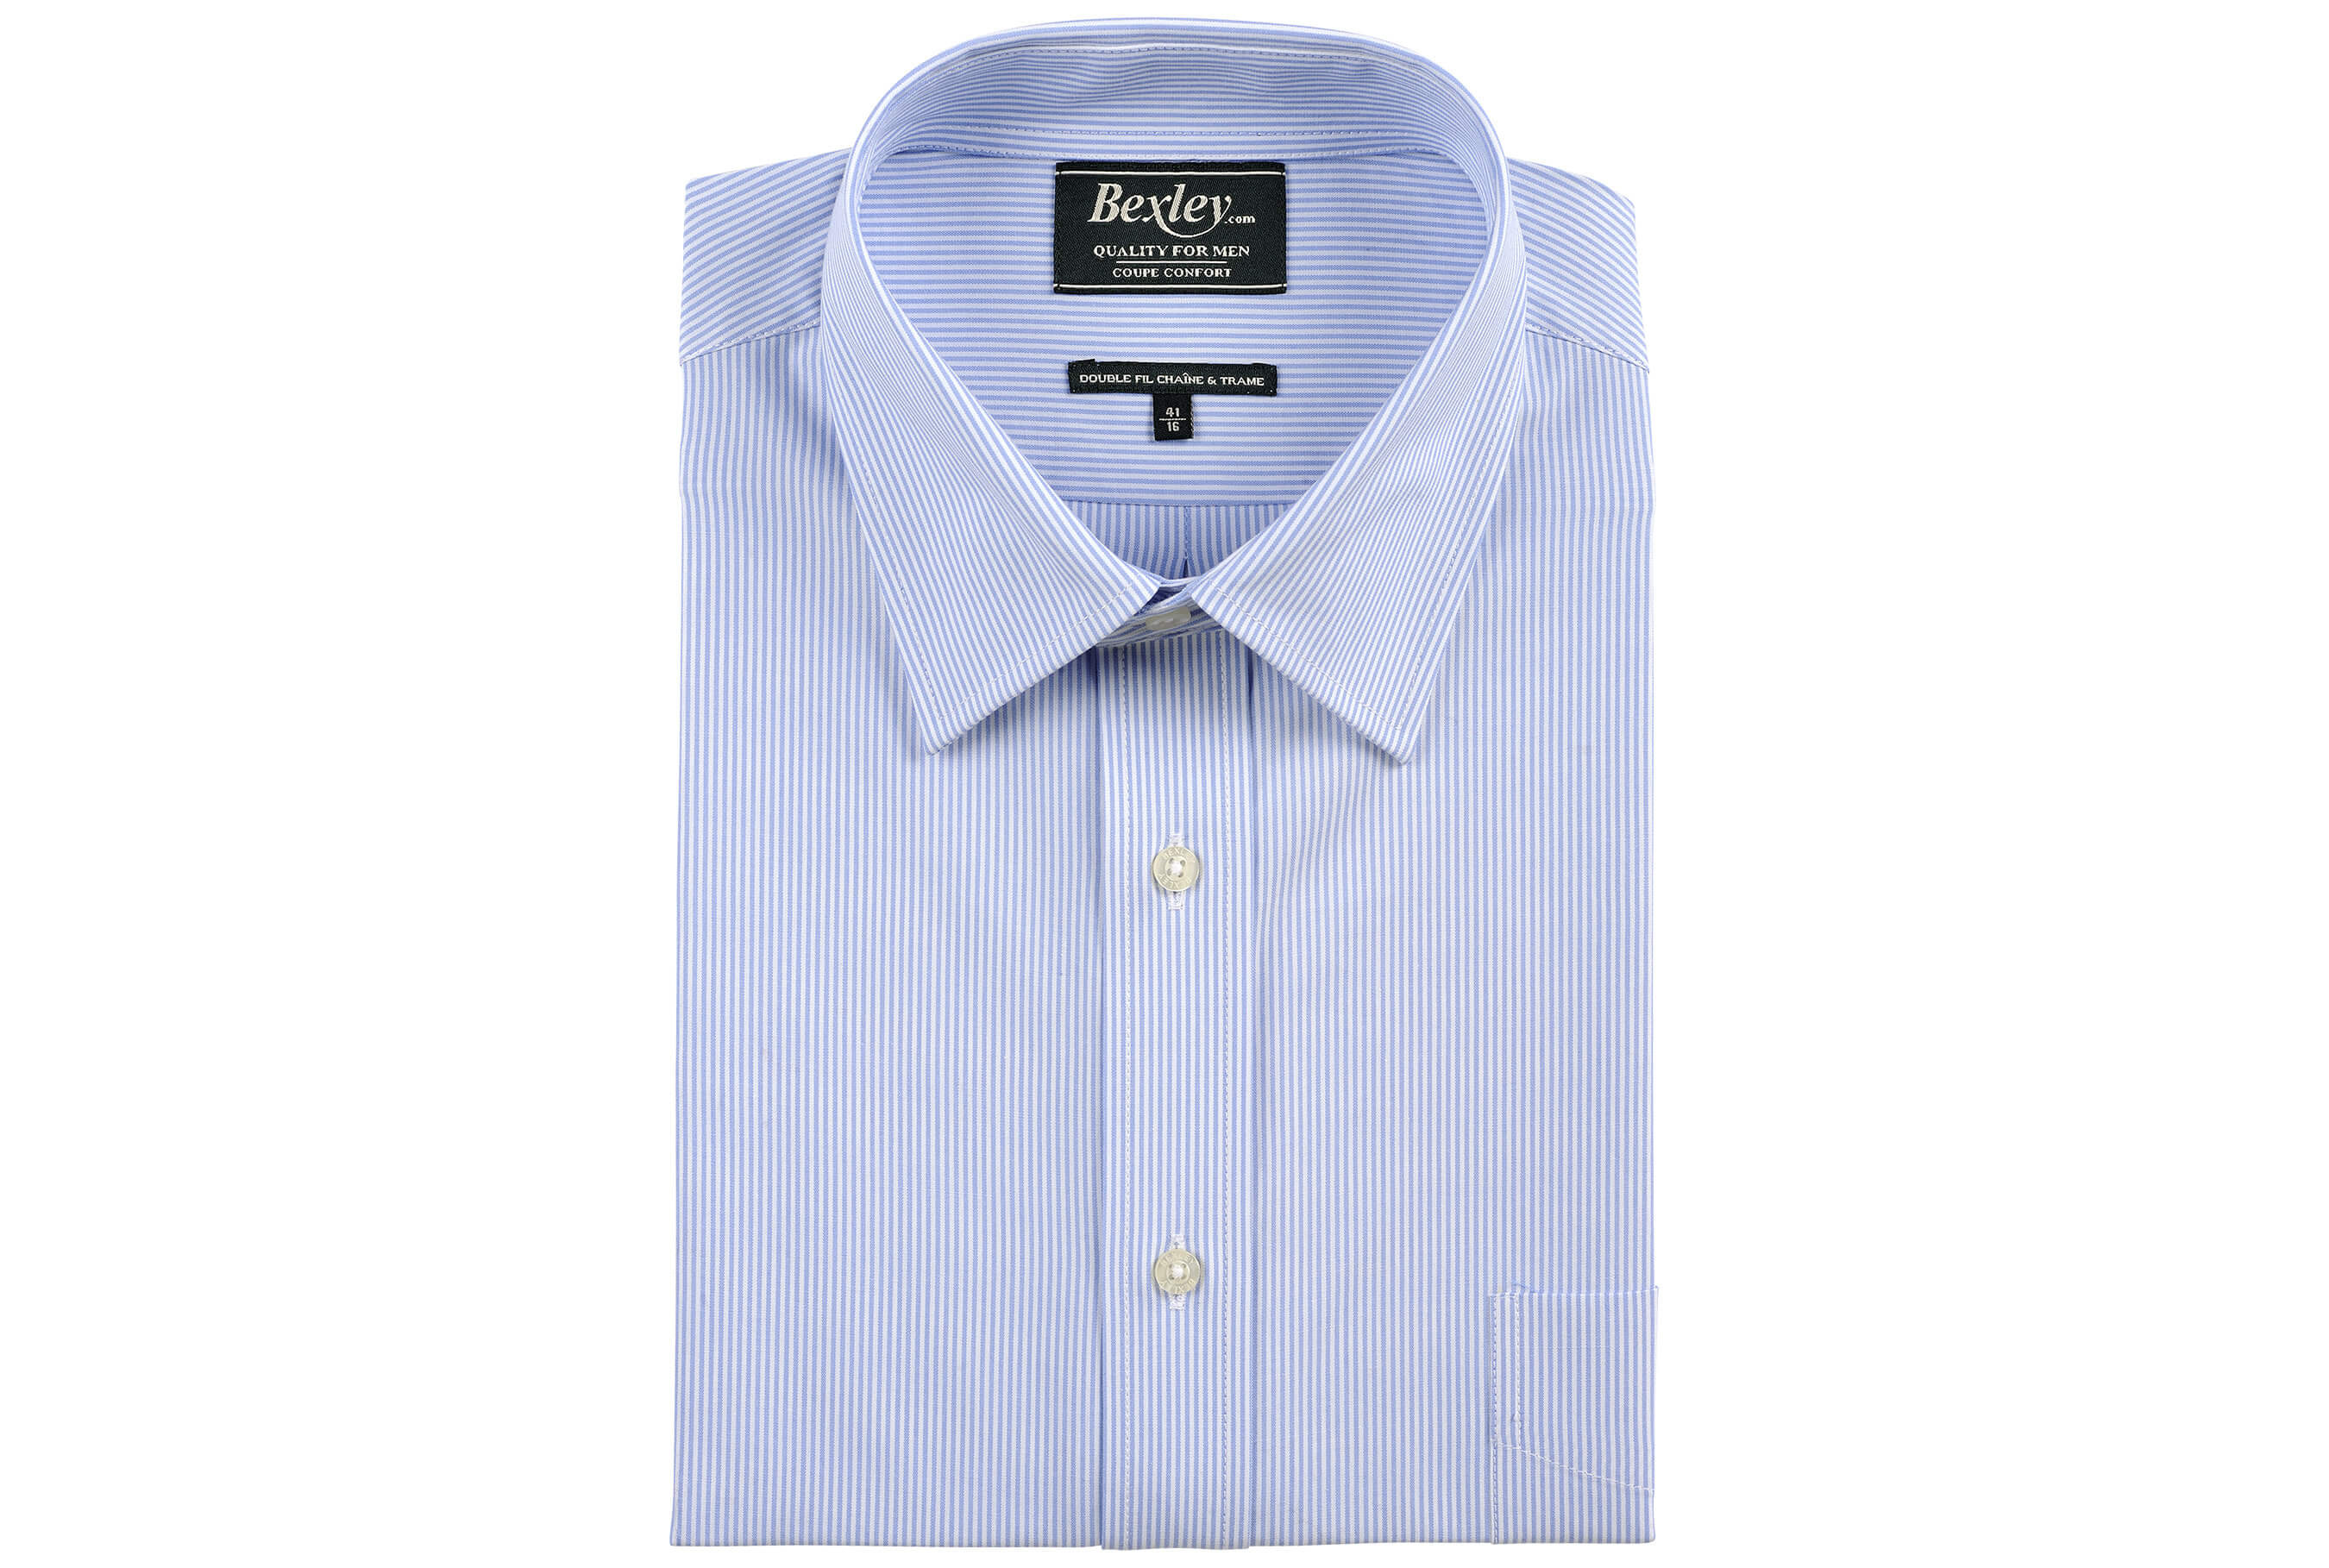 bexley chemise homme 100% coton, bleu clair et blanc, manches longues, coupe confort